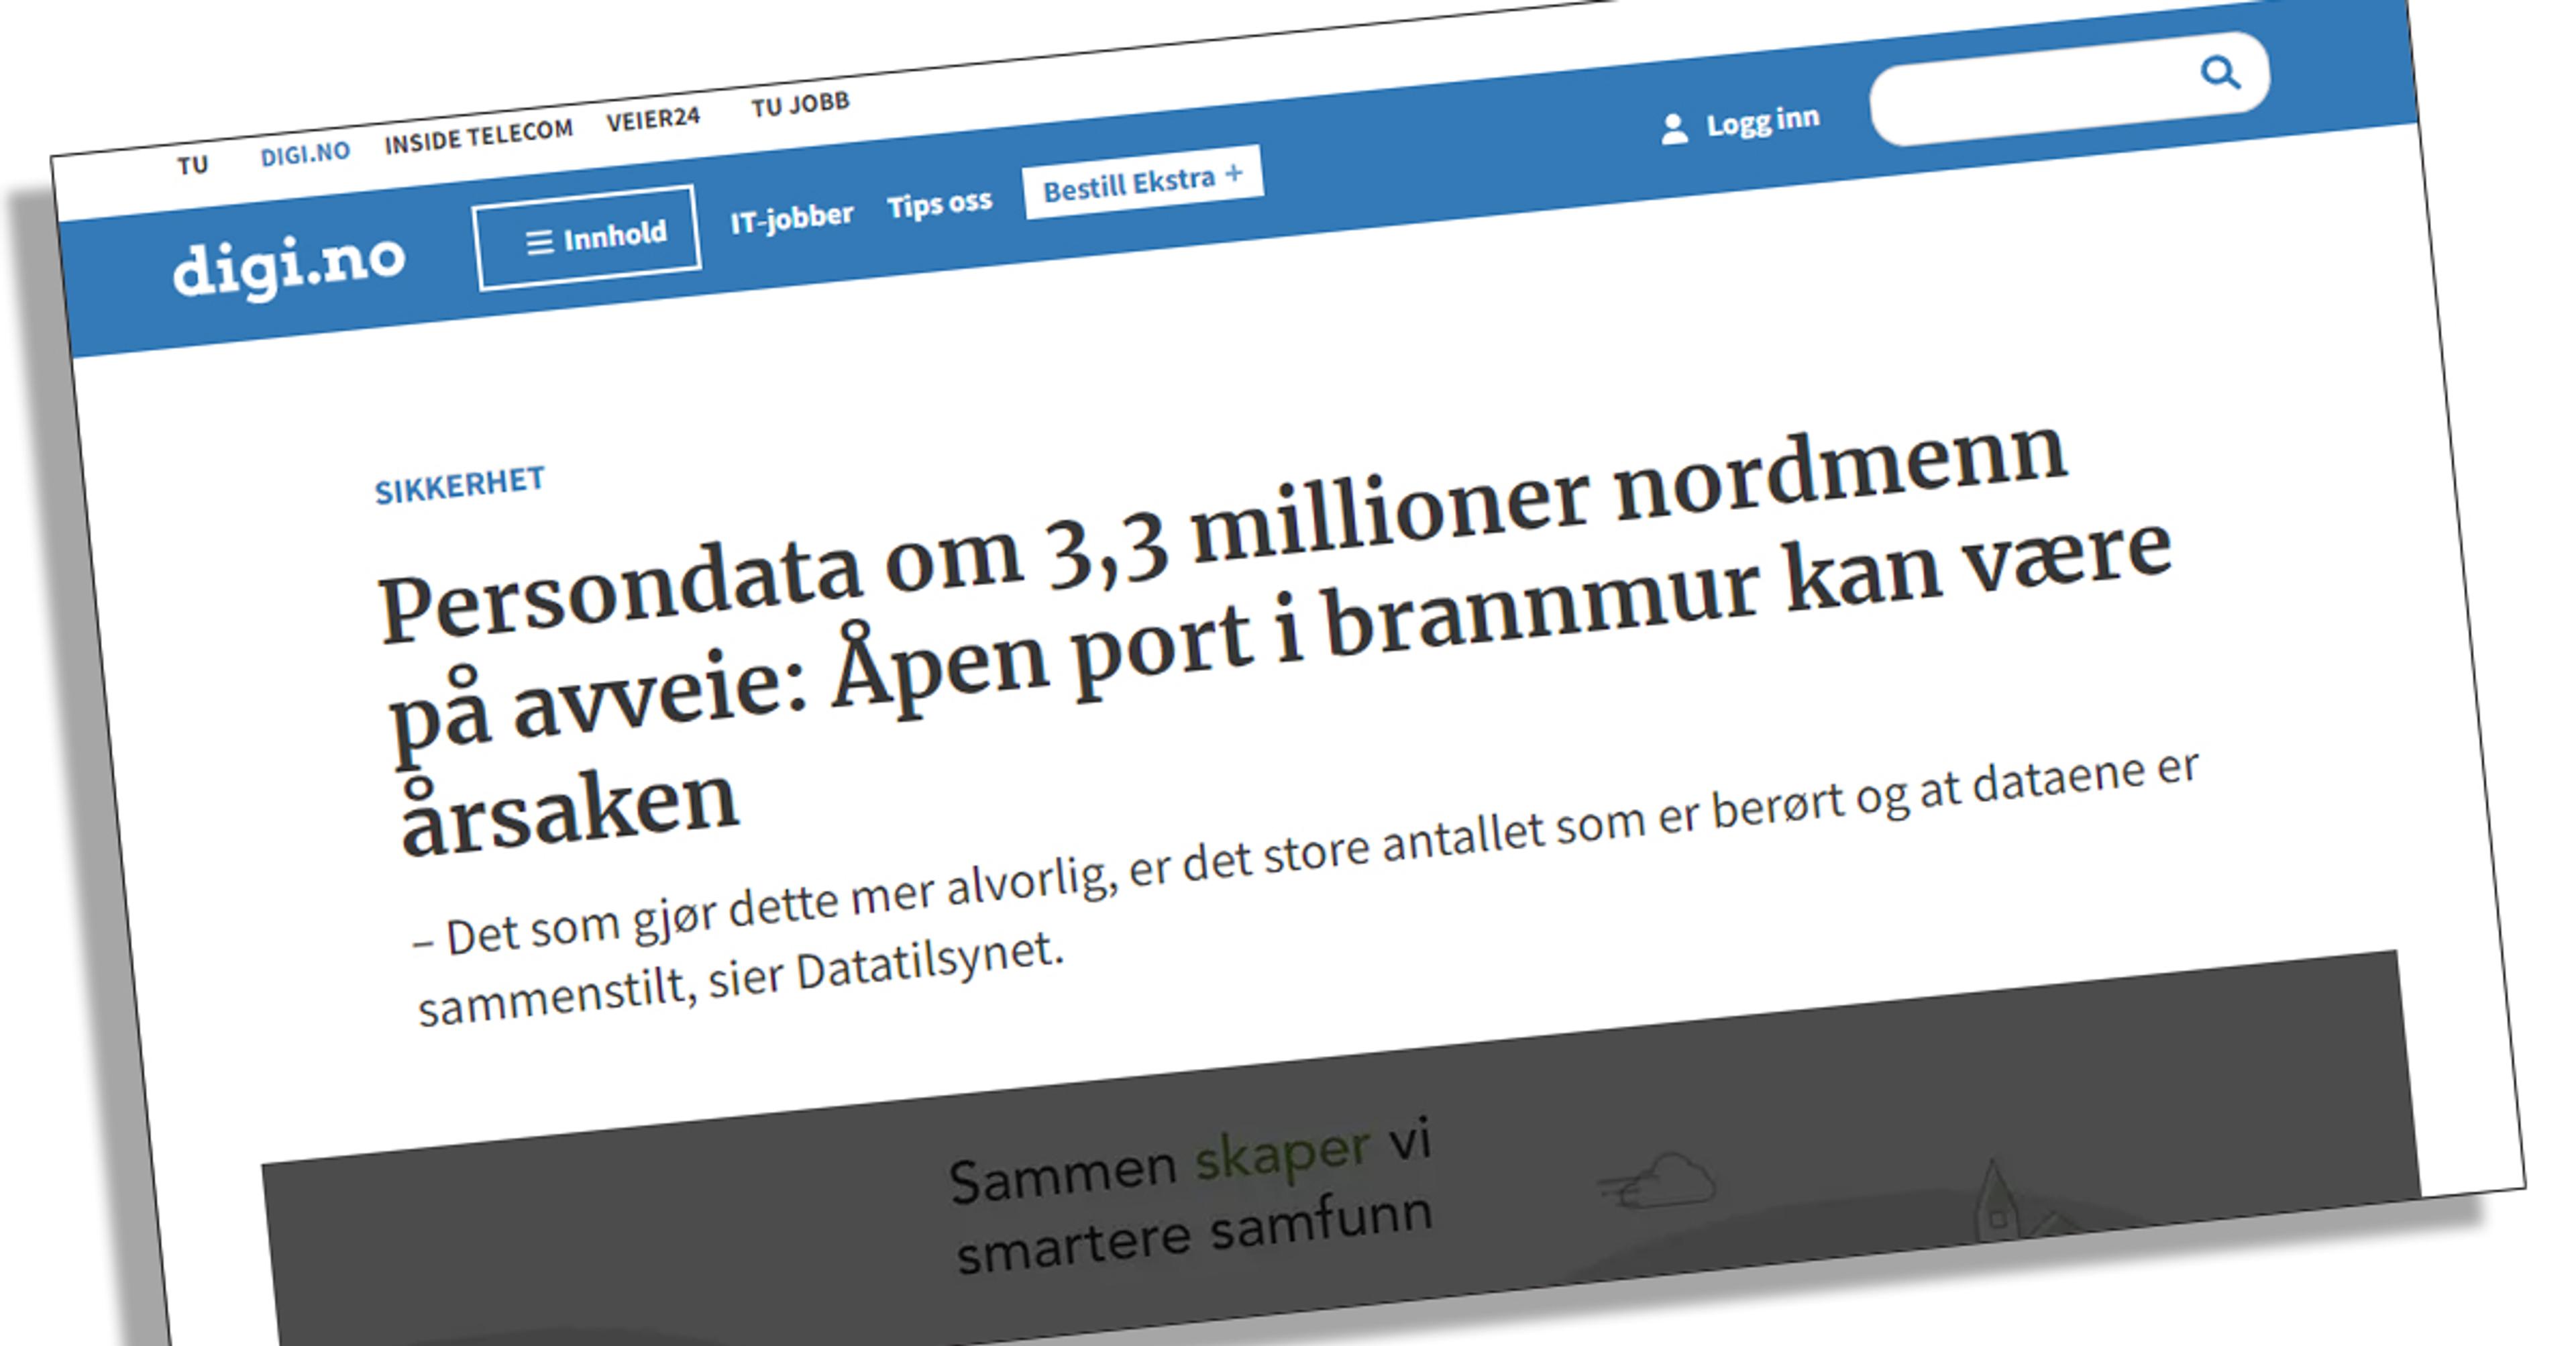 “Persondata om 3,3 millioner nordmenn på avveie!”